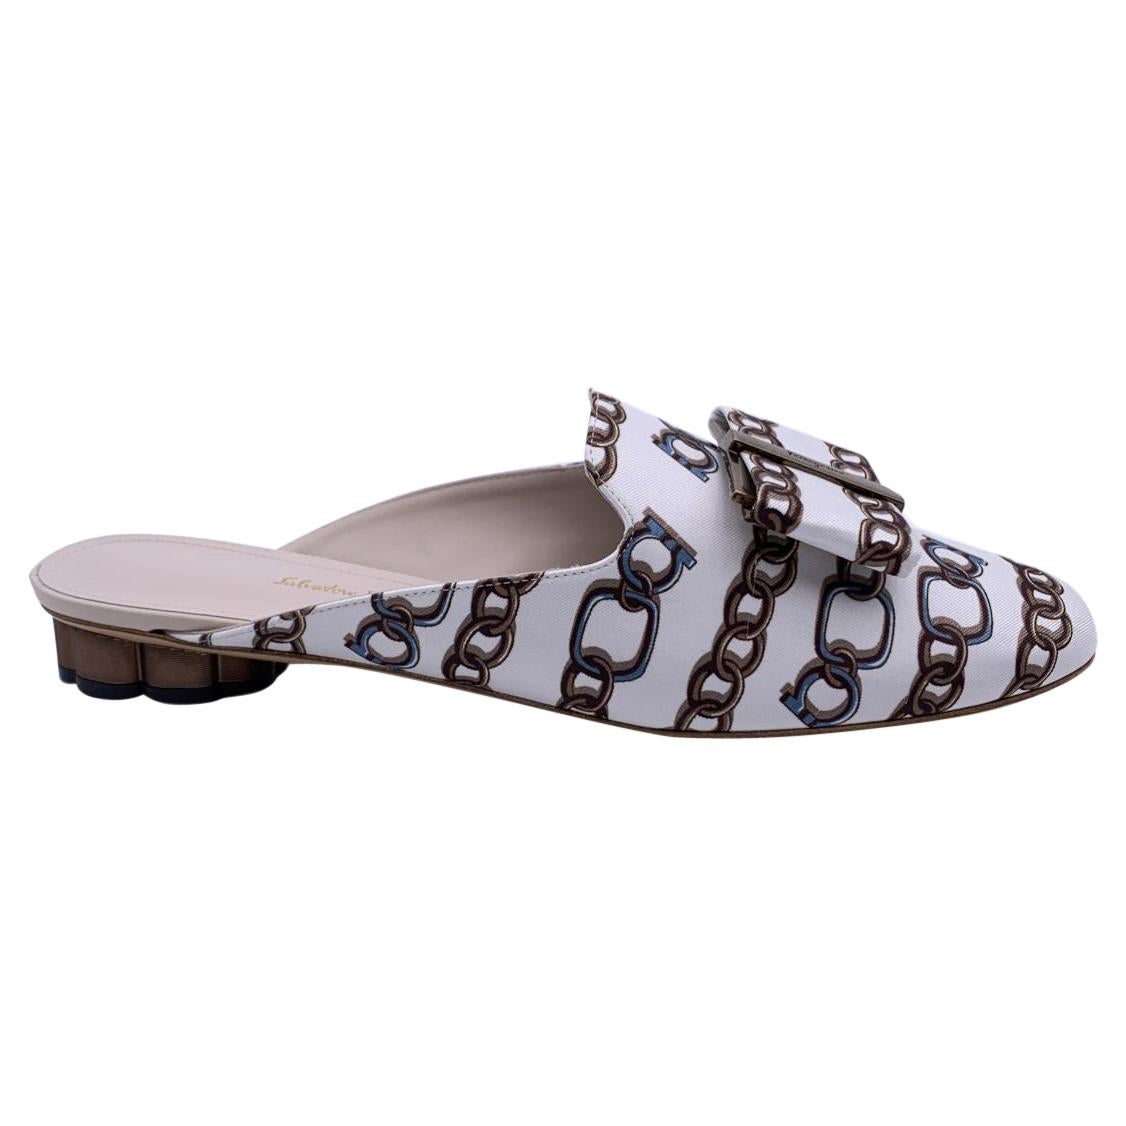 Salvatore Ferragamo White Chain Sciacca Twill Shoes Size US 7.5C EU 38